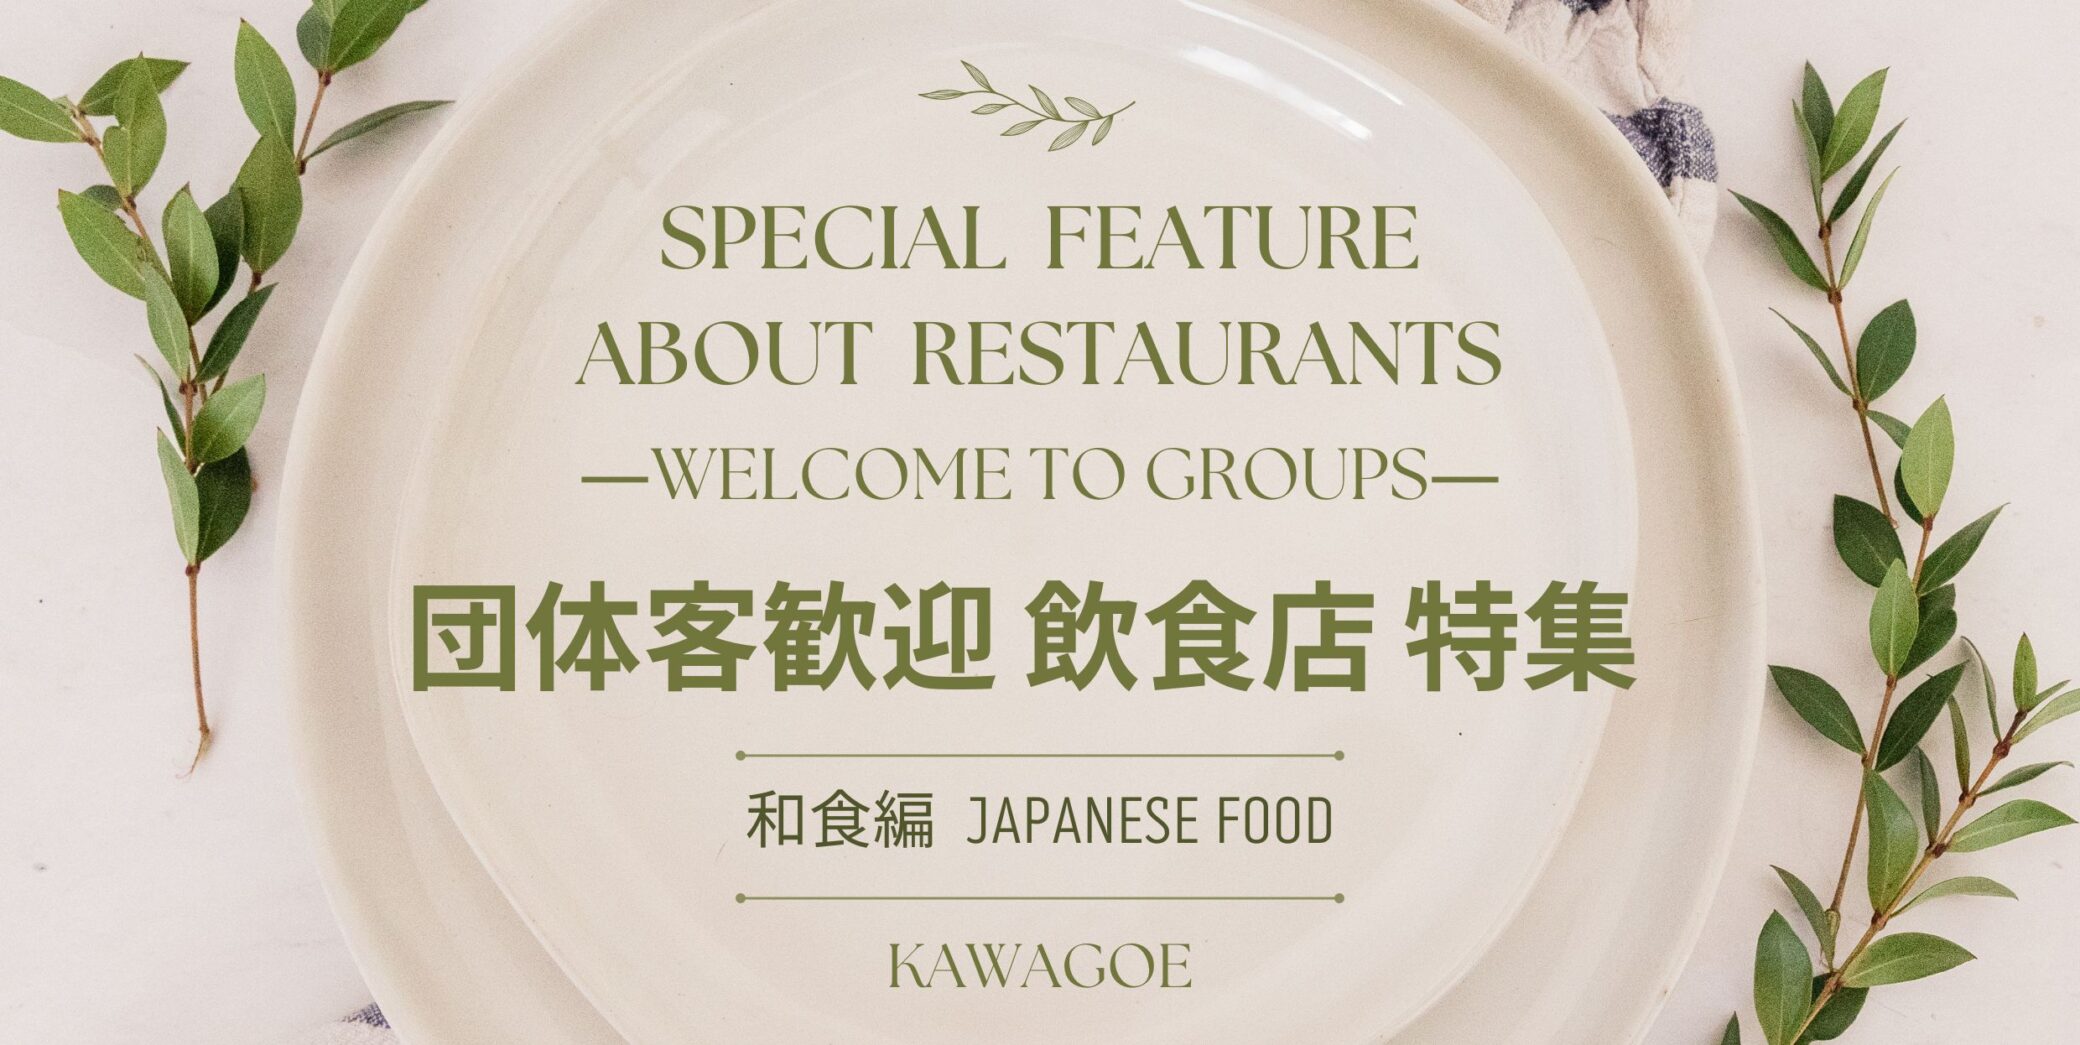 🍴接待团体客人的餐厅特色-日本料理-🎉